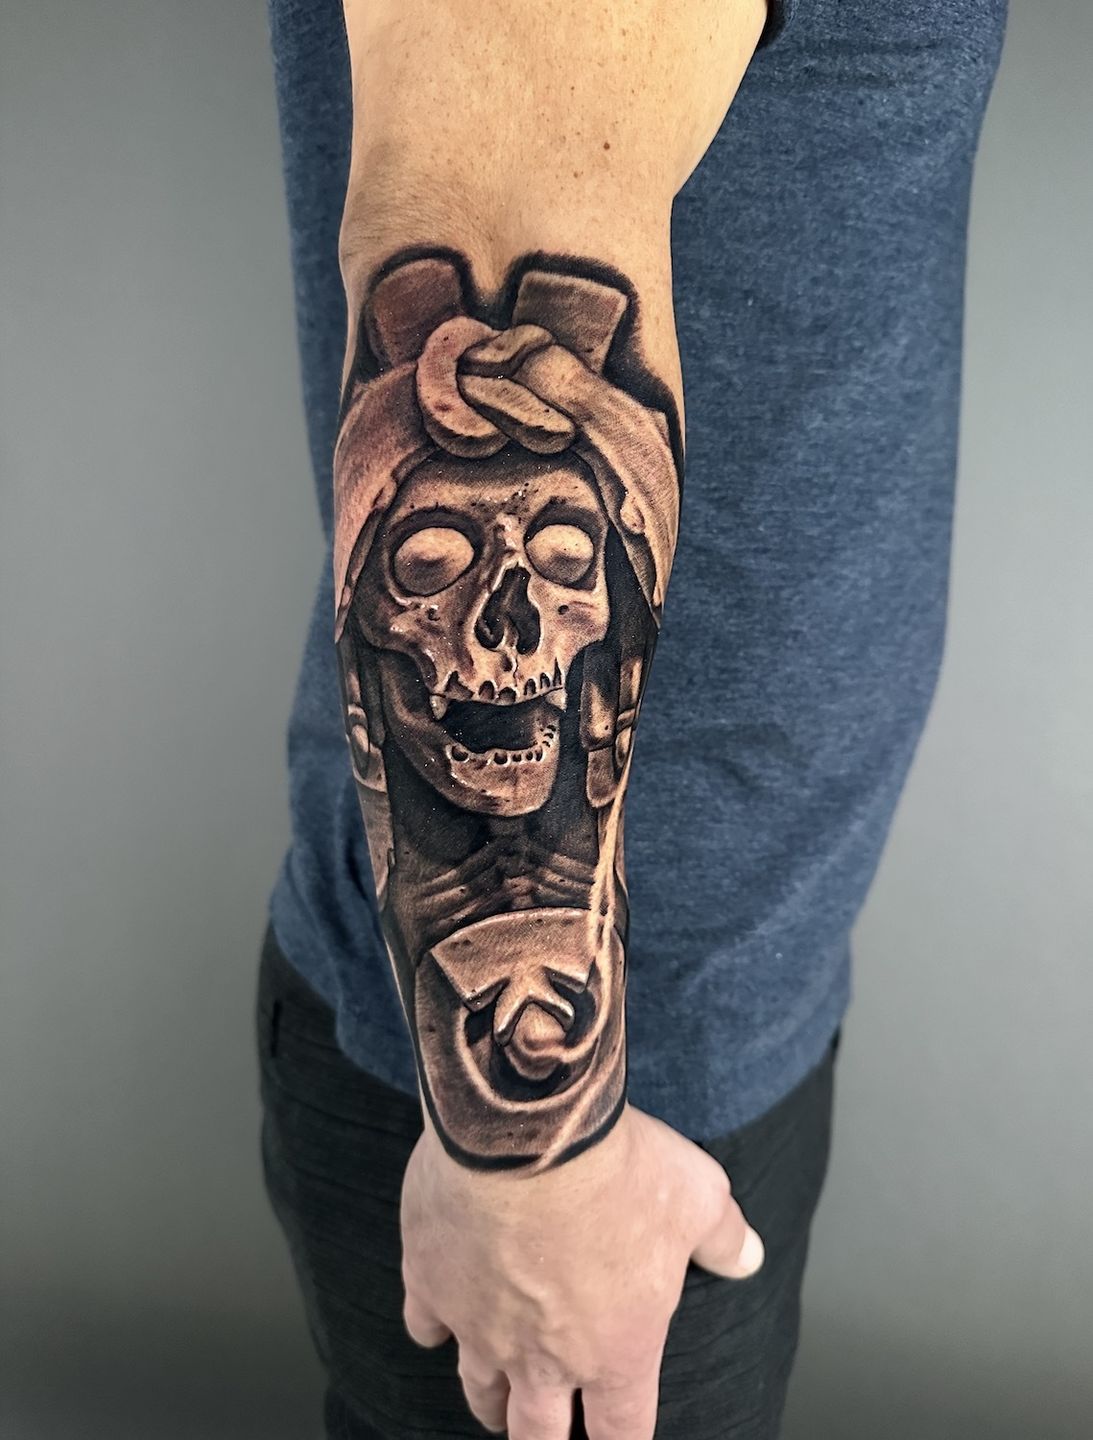 Asian Deity Tattoo by Black Cobra Tattoo (Matt O'Baugh & Katie McGowan) |  Tattoos, Ink master, Bad tattoos